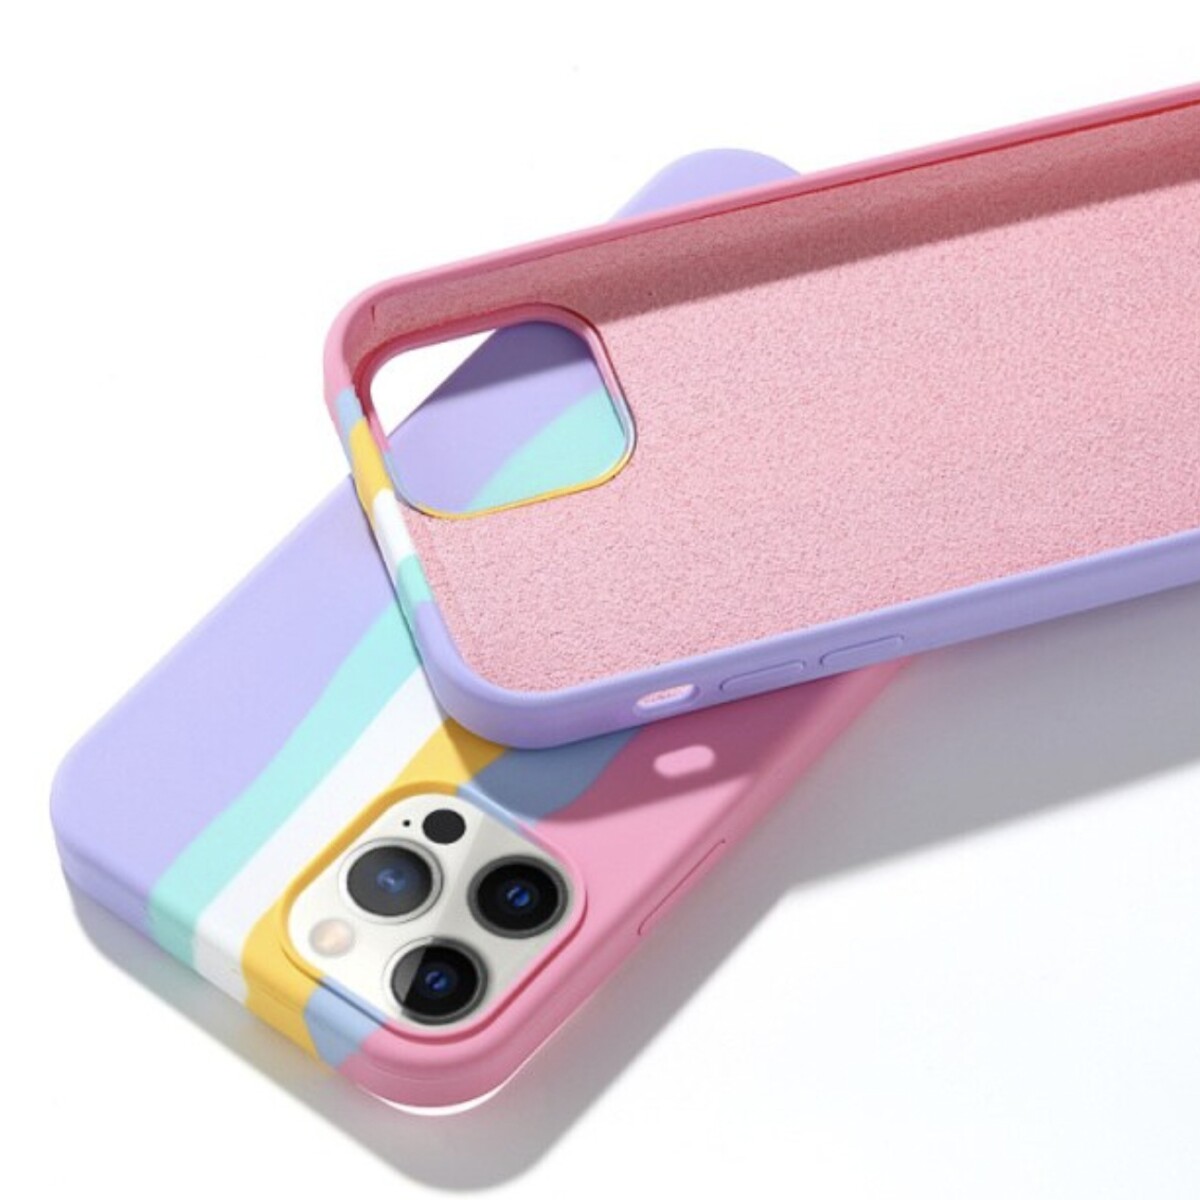 Protector case de silicona para iphone 11 pro Arcoiris rosado